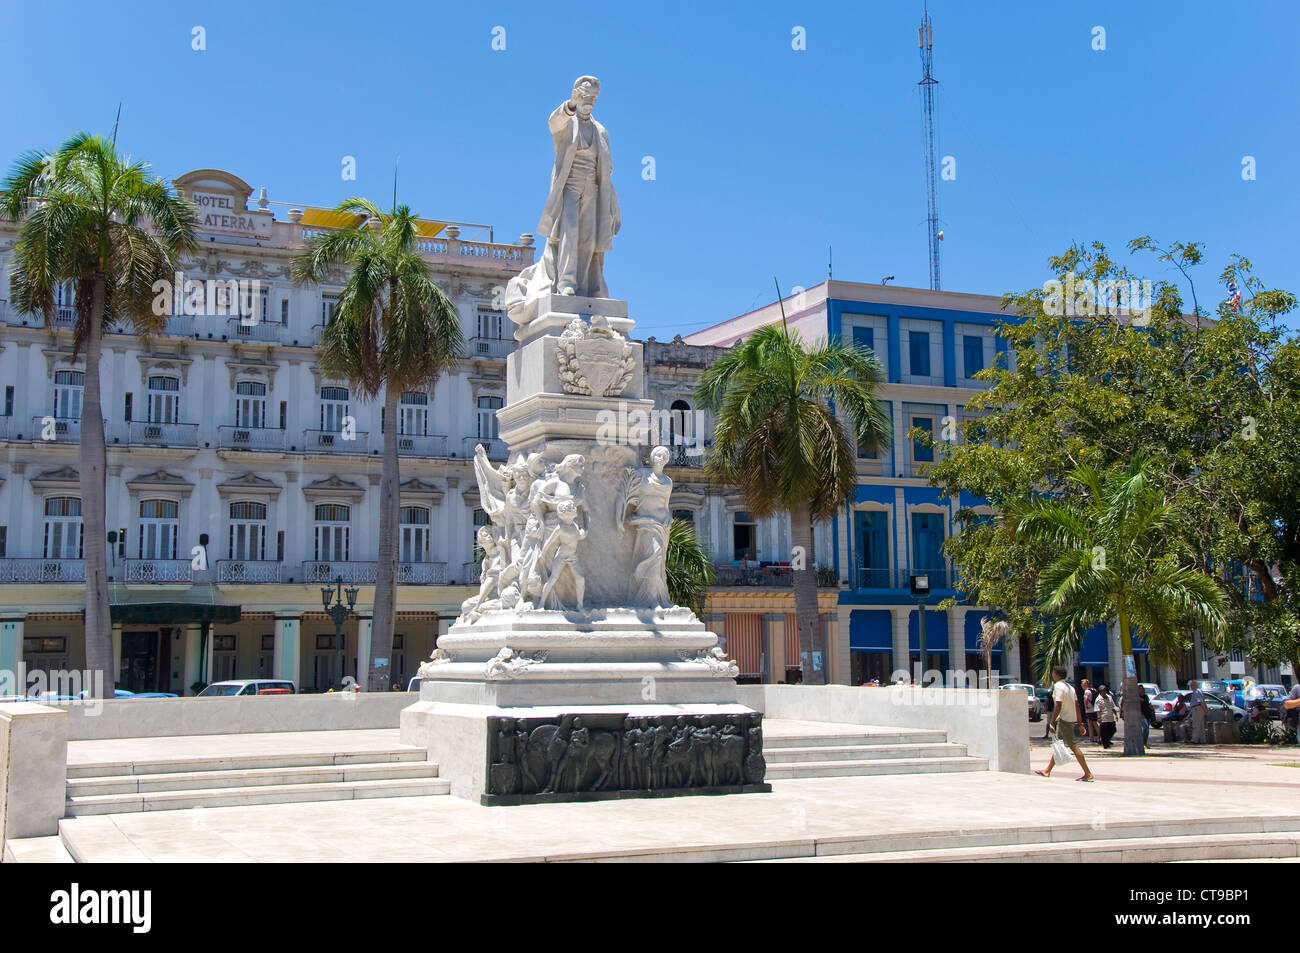 Statue in Parque Central, La Havana, Cuba Stock Photo